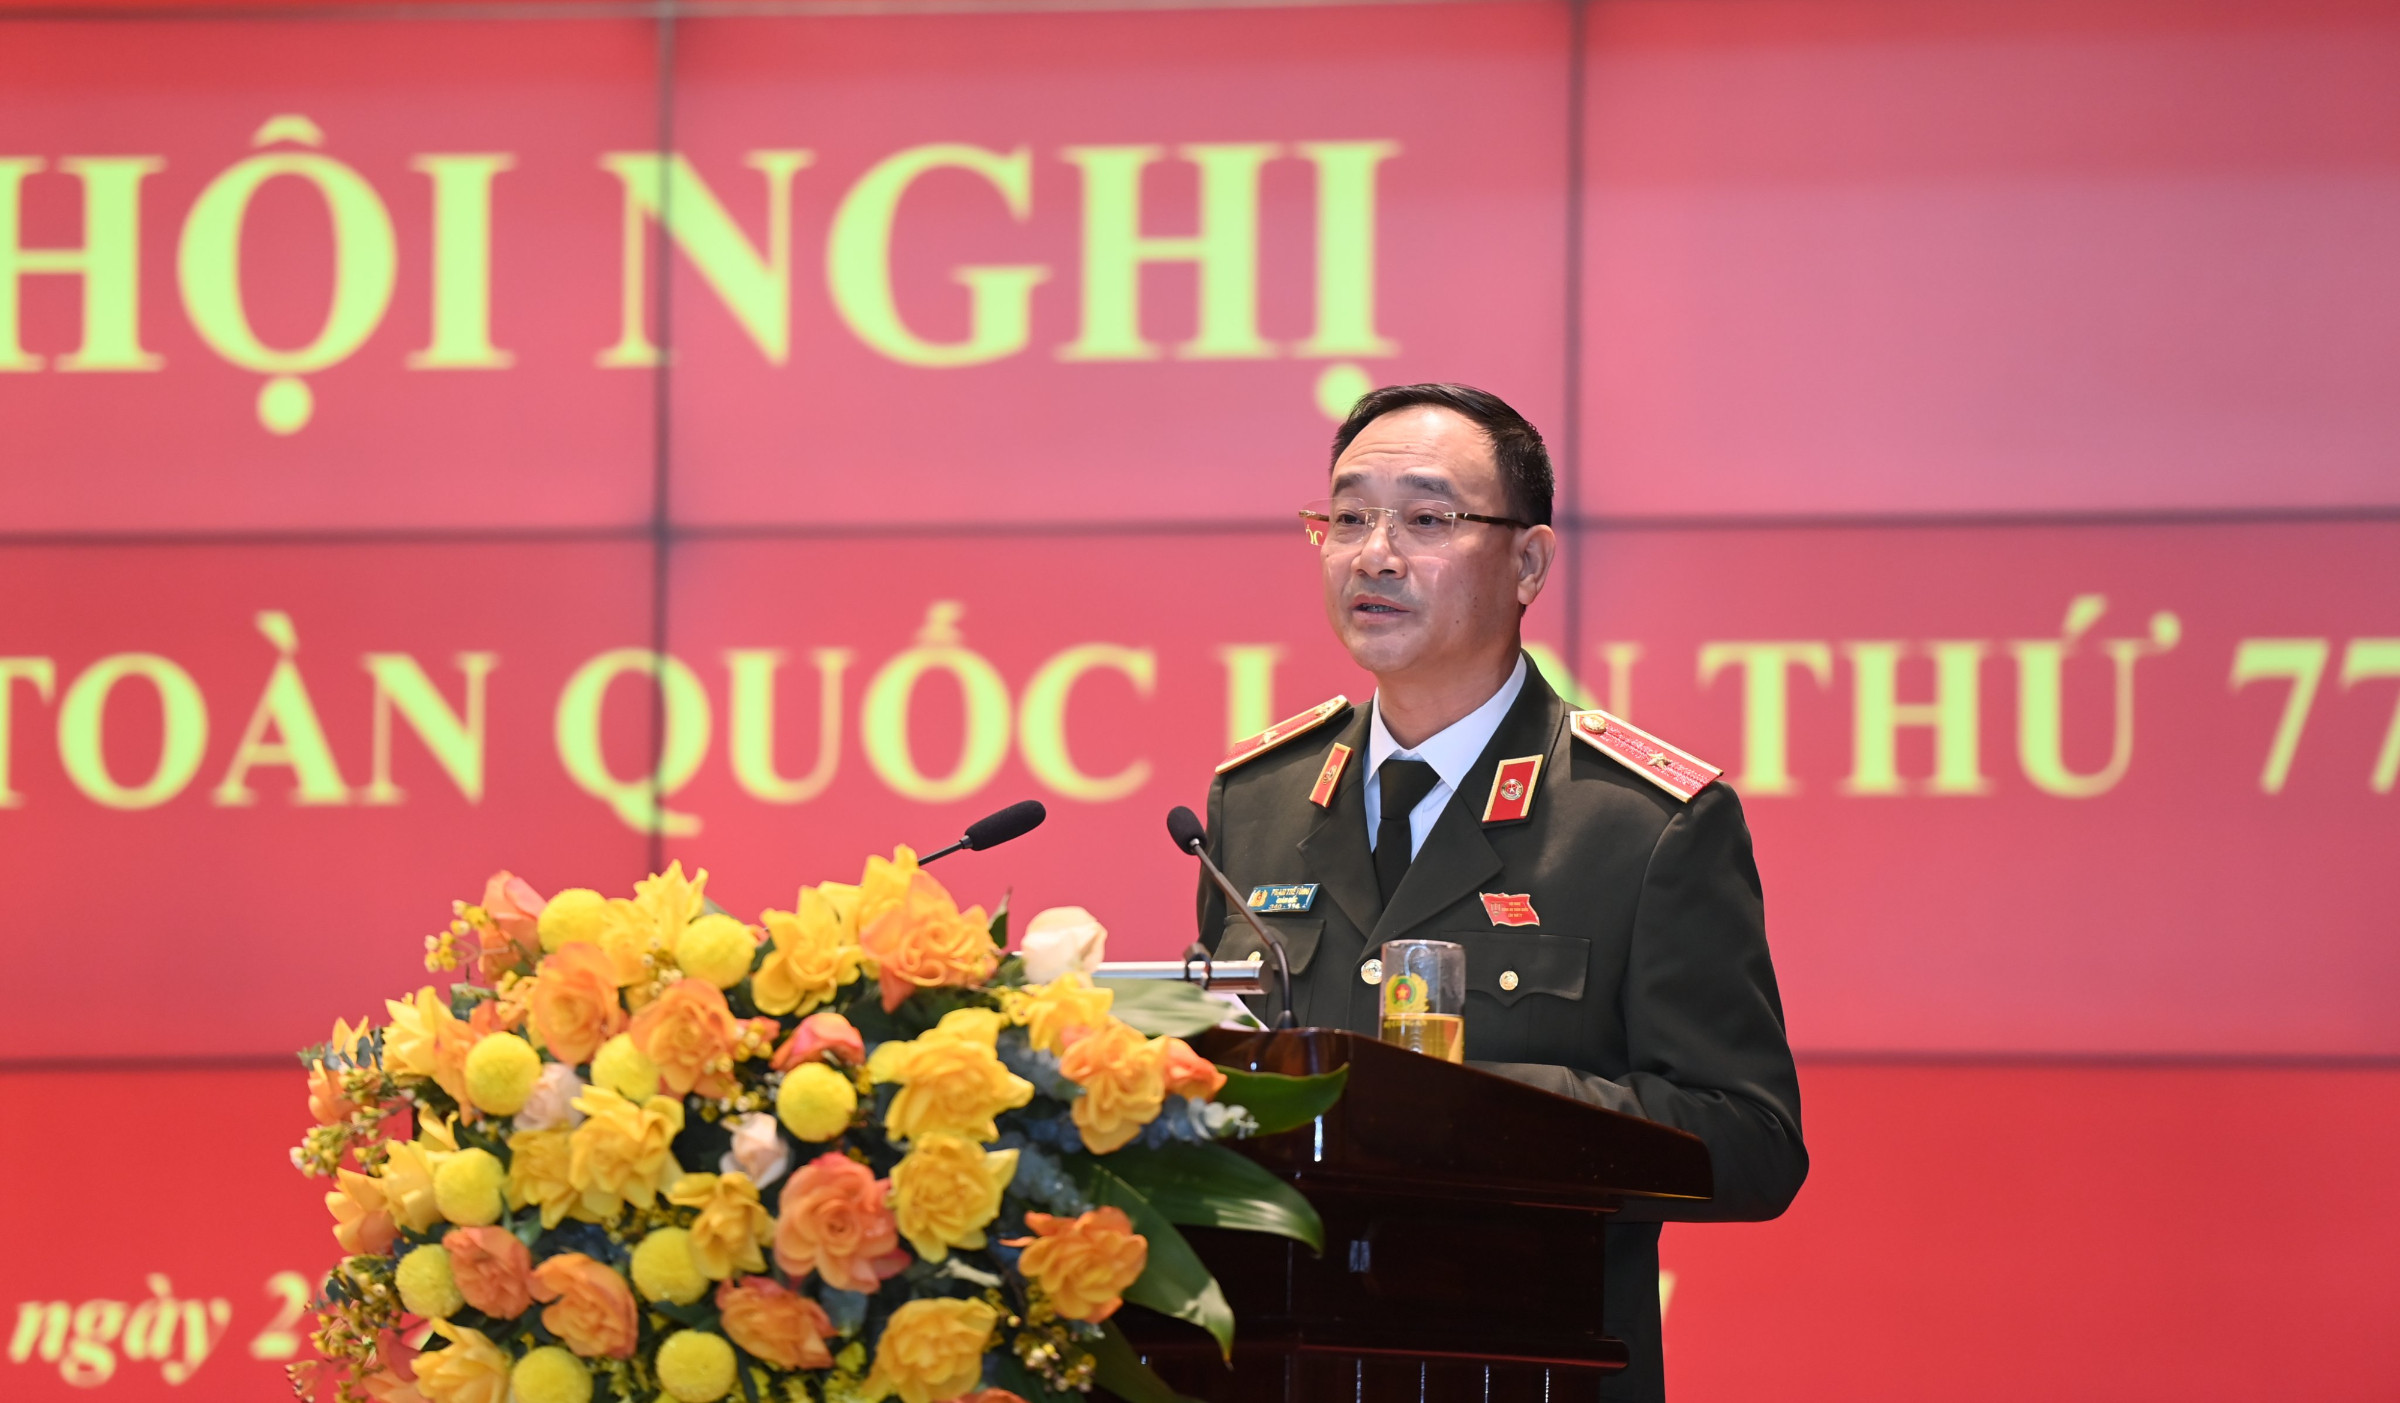 Đồng chí Thiếu tướng Phạm Thế Tùng, Giám đốc Công an tỉnh Nghệ An trình bày tham luận tại Hội nghị Công an toàn quốc lần thứ 77, ngày 27/12/2021.